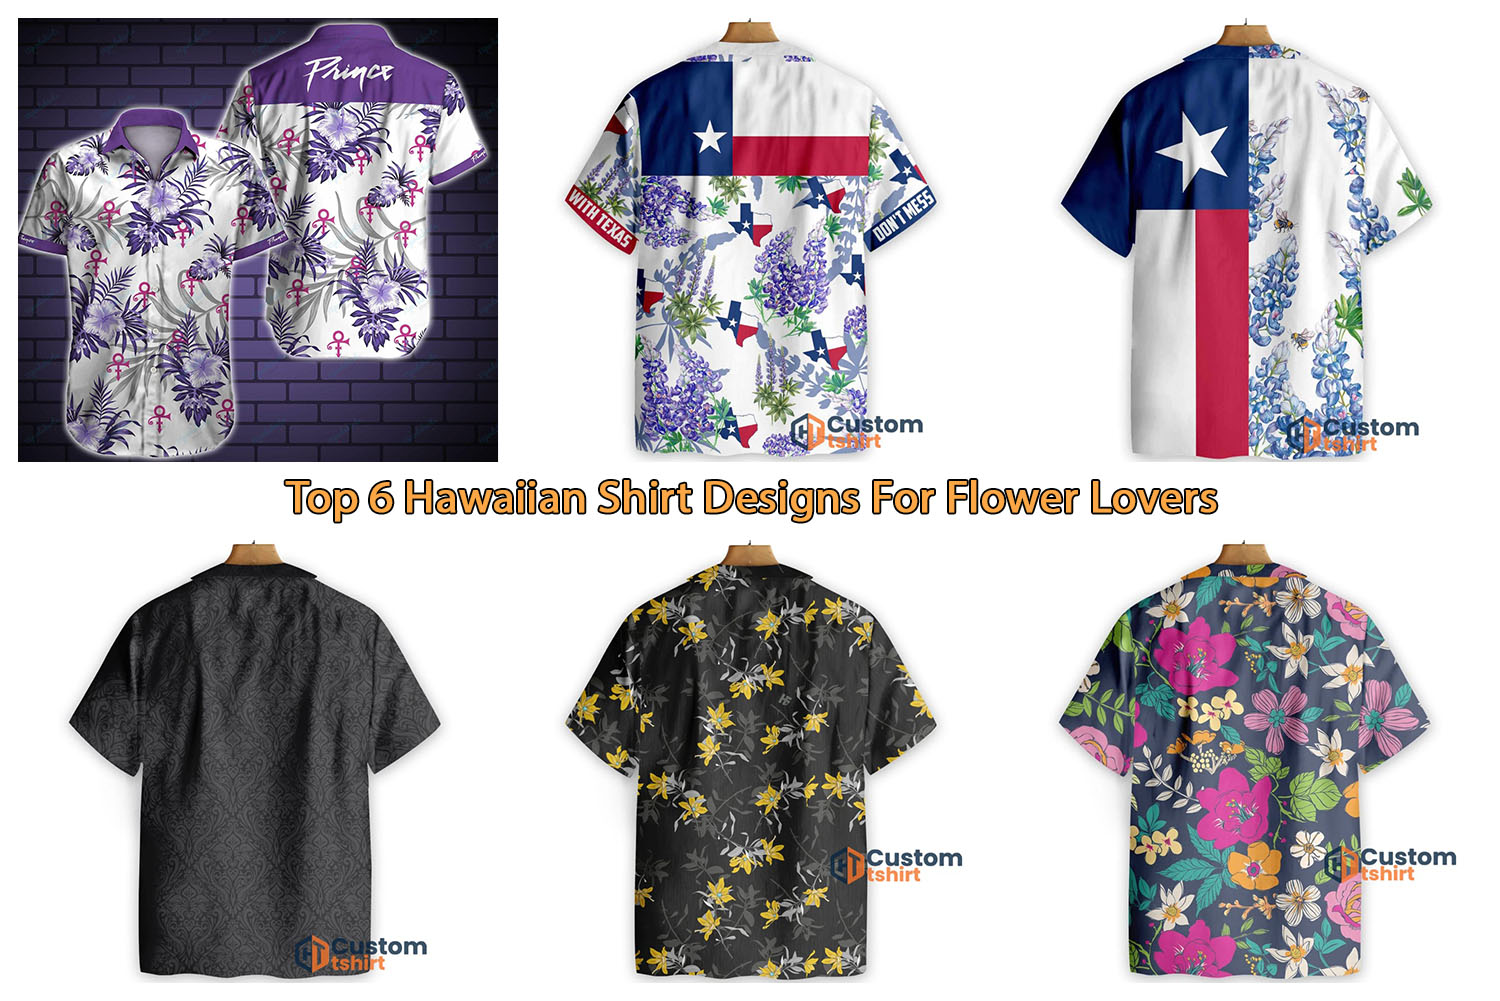 Top 6 Hawaiian Shirt Designs For Flower Lovers